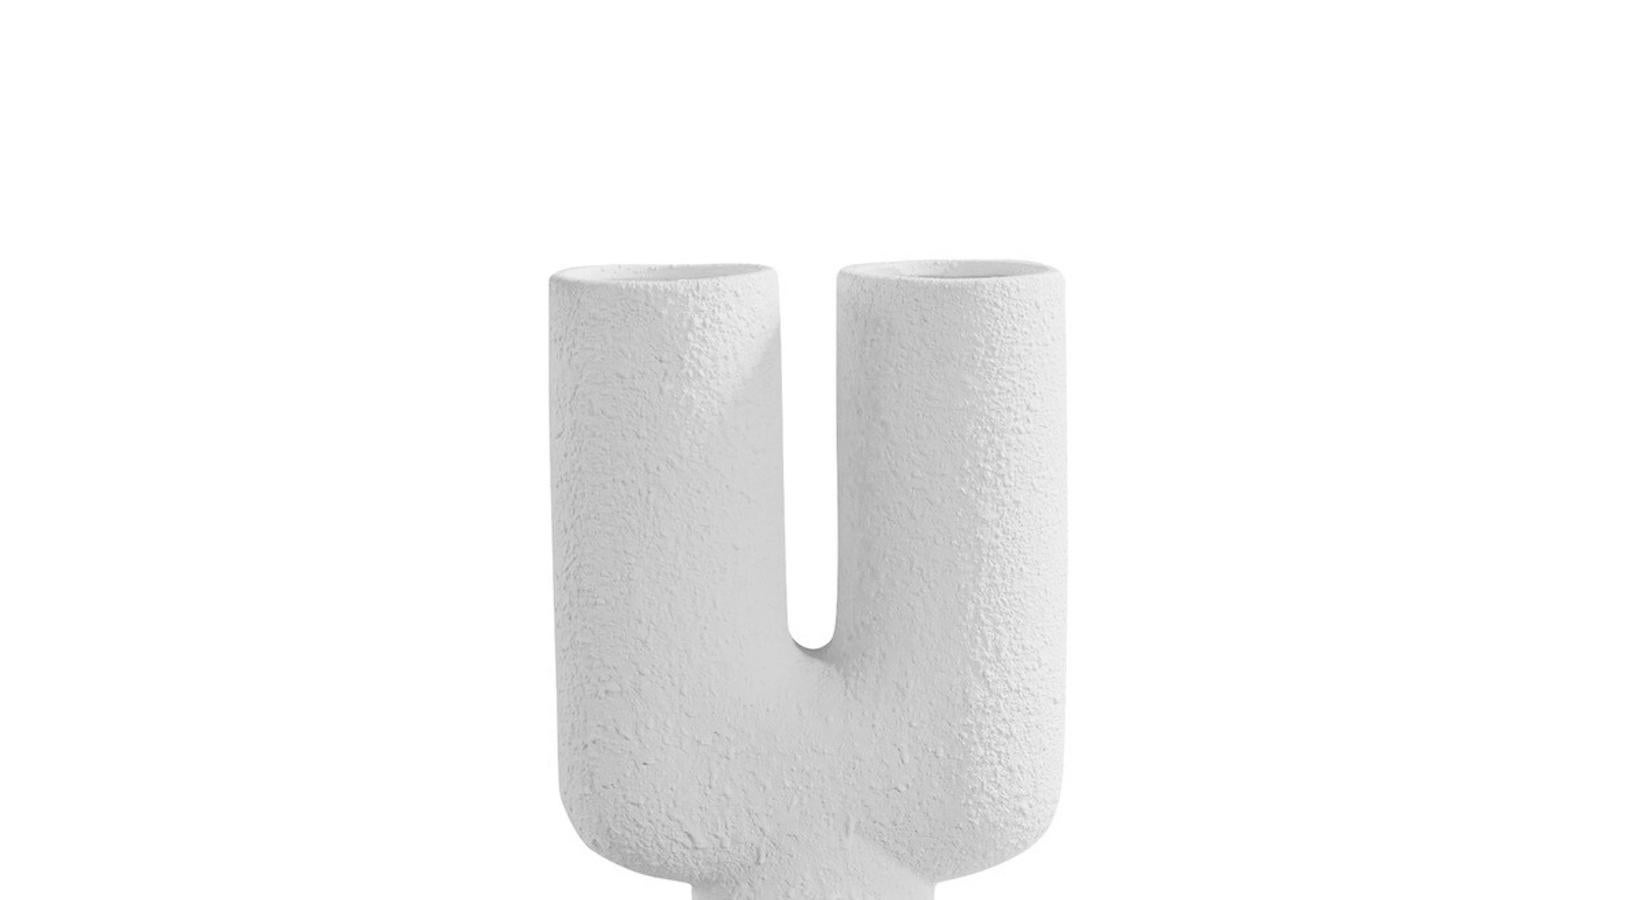 Grand vase danois contemporain en céramique blanche texturée avec deux becs ronds sur une base de deux sphères rondes.
Un design très sculptural.
Version plus petite disponible S5602
Deux disponibles et vendus individuellement.

